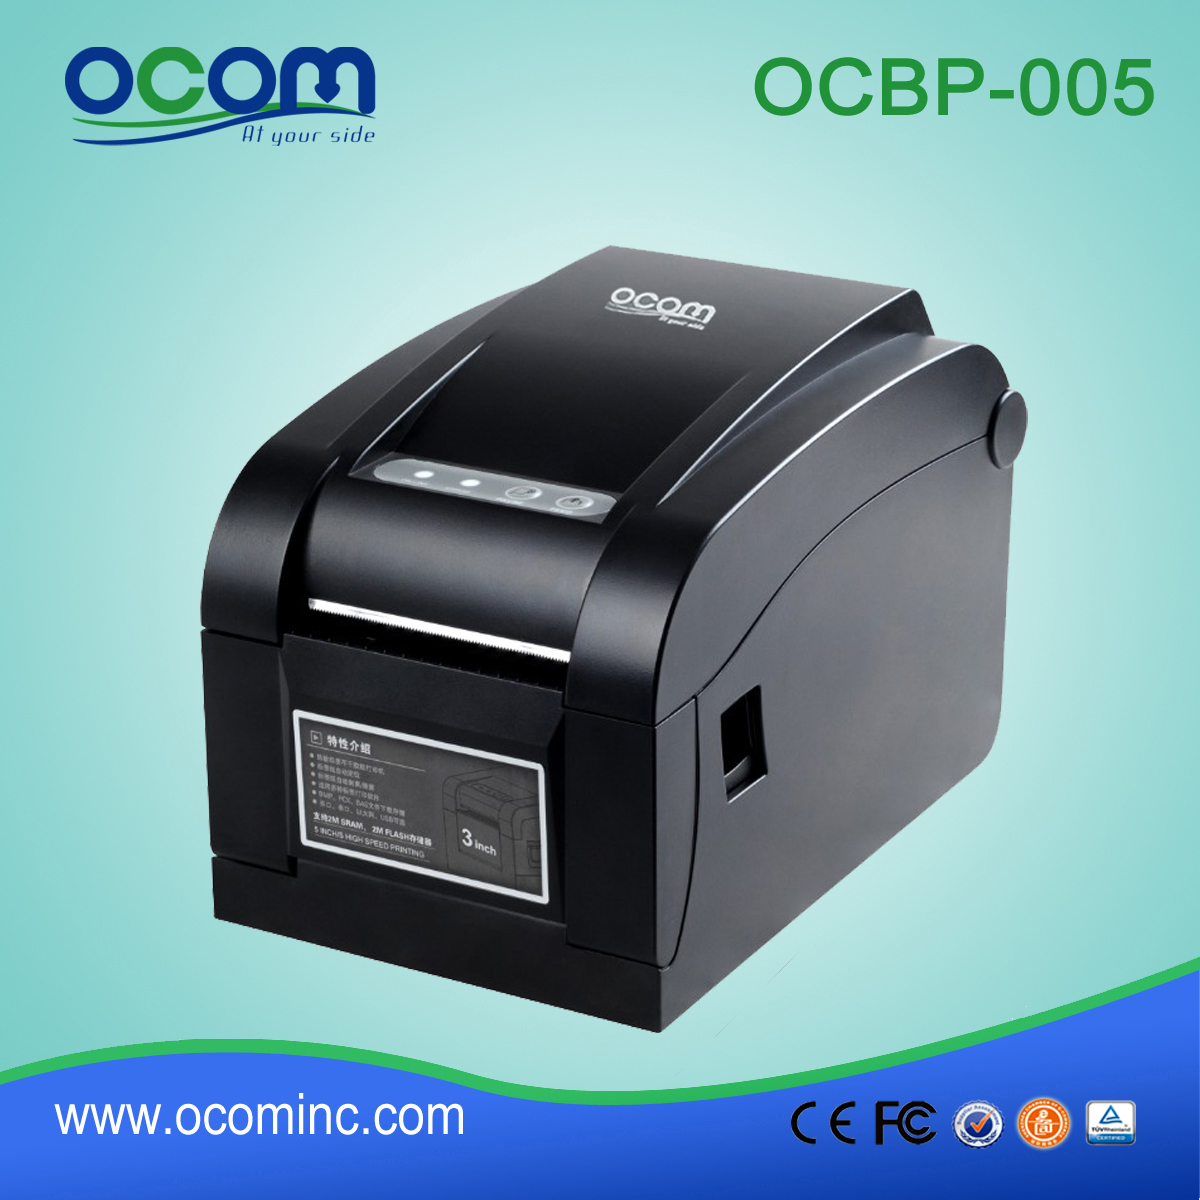 OCBP-005-URL 16mm-82mm Width Paper Thermal Barcode Label Printer